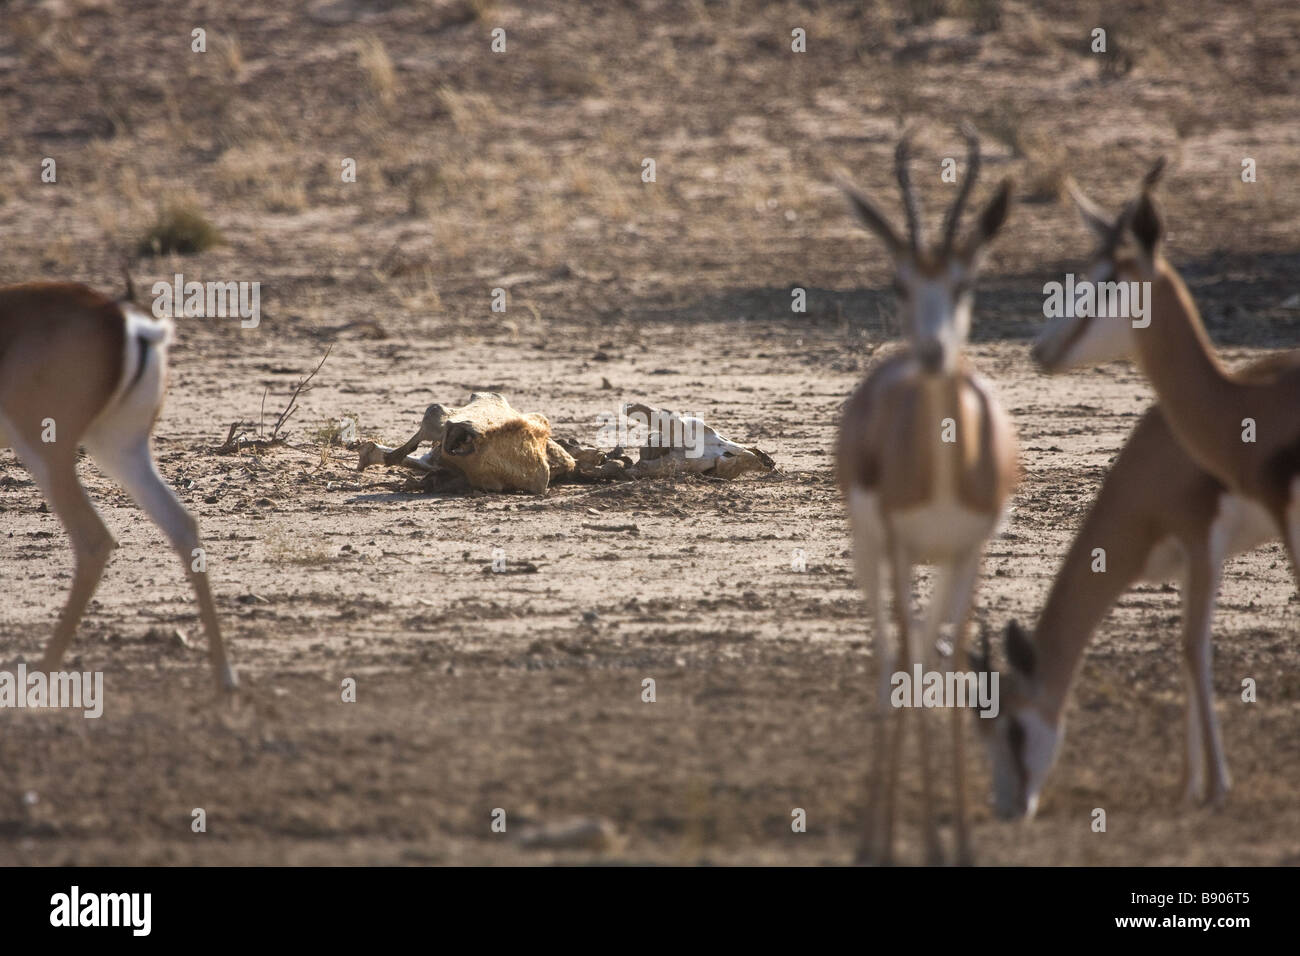 Springbock-Antilope stehen in der Kalari in der Nähe von den Knochen der Toten Springbock. Stockfoto